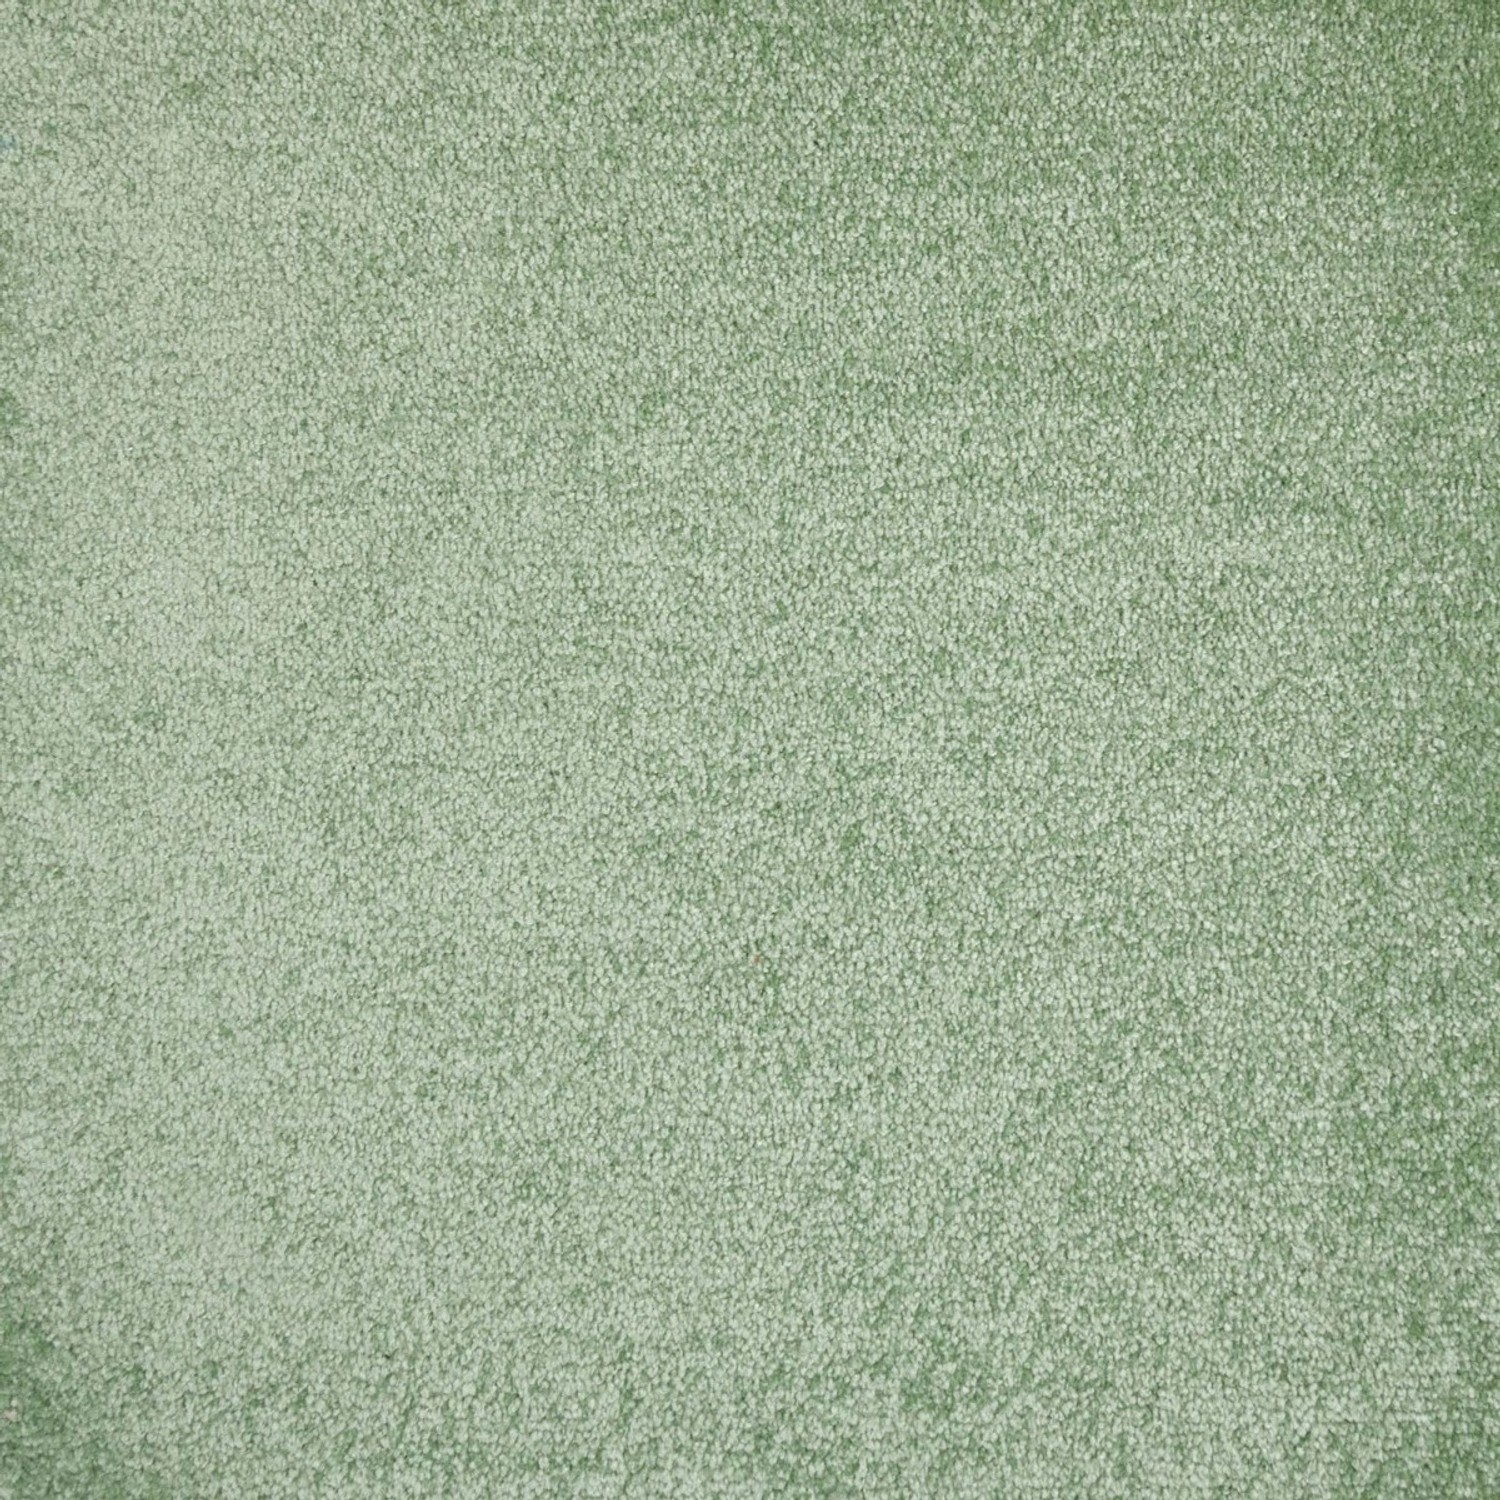 Schatex Salbeigrün Teppich Fliesen Teppichfliesen Selbstliegend Grün Für Wohnzimmer Und Schlafzimmer Veloursteppich Als 